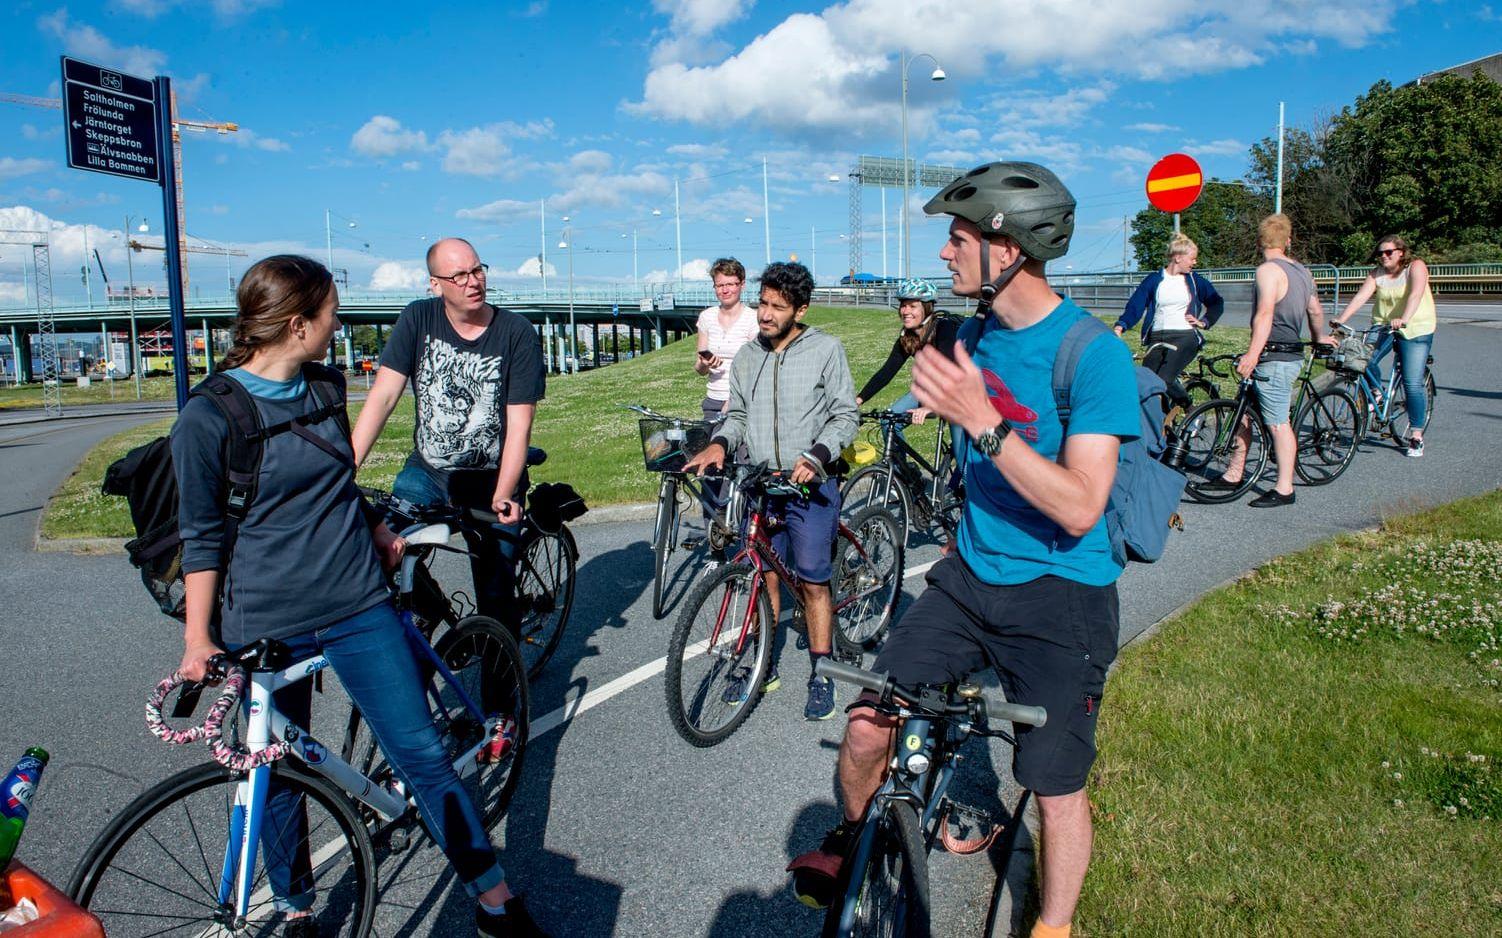 Anneli Svensson till vänster i bild driver en cykelverkstad vid Röda Sten. Hon har varit med på Llama Lloyds Slörull flera gånger förut, bland annat till Ballograf-fabriken. Bild: Anders Hofgren